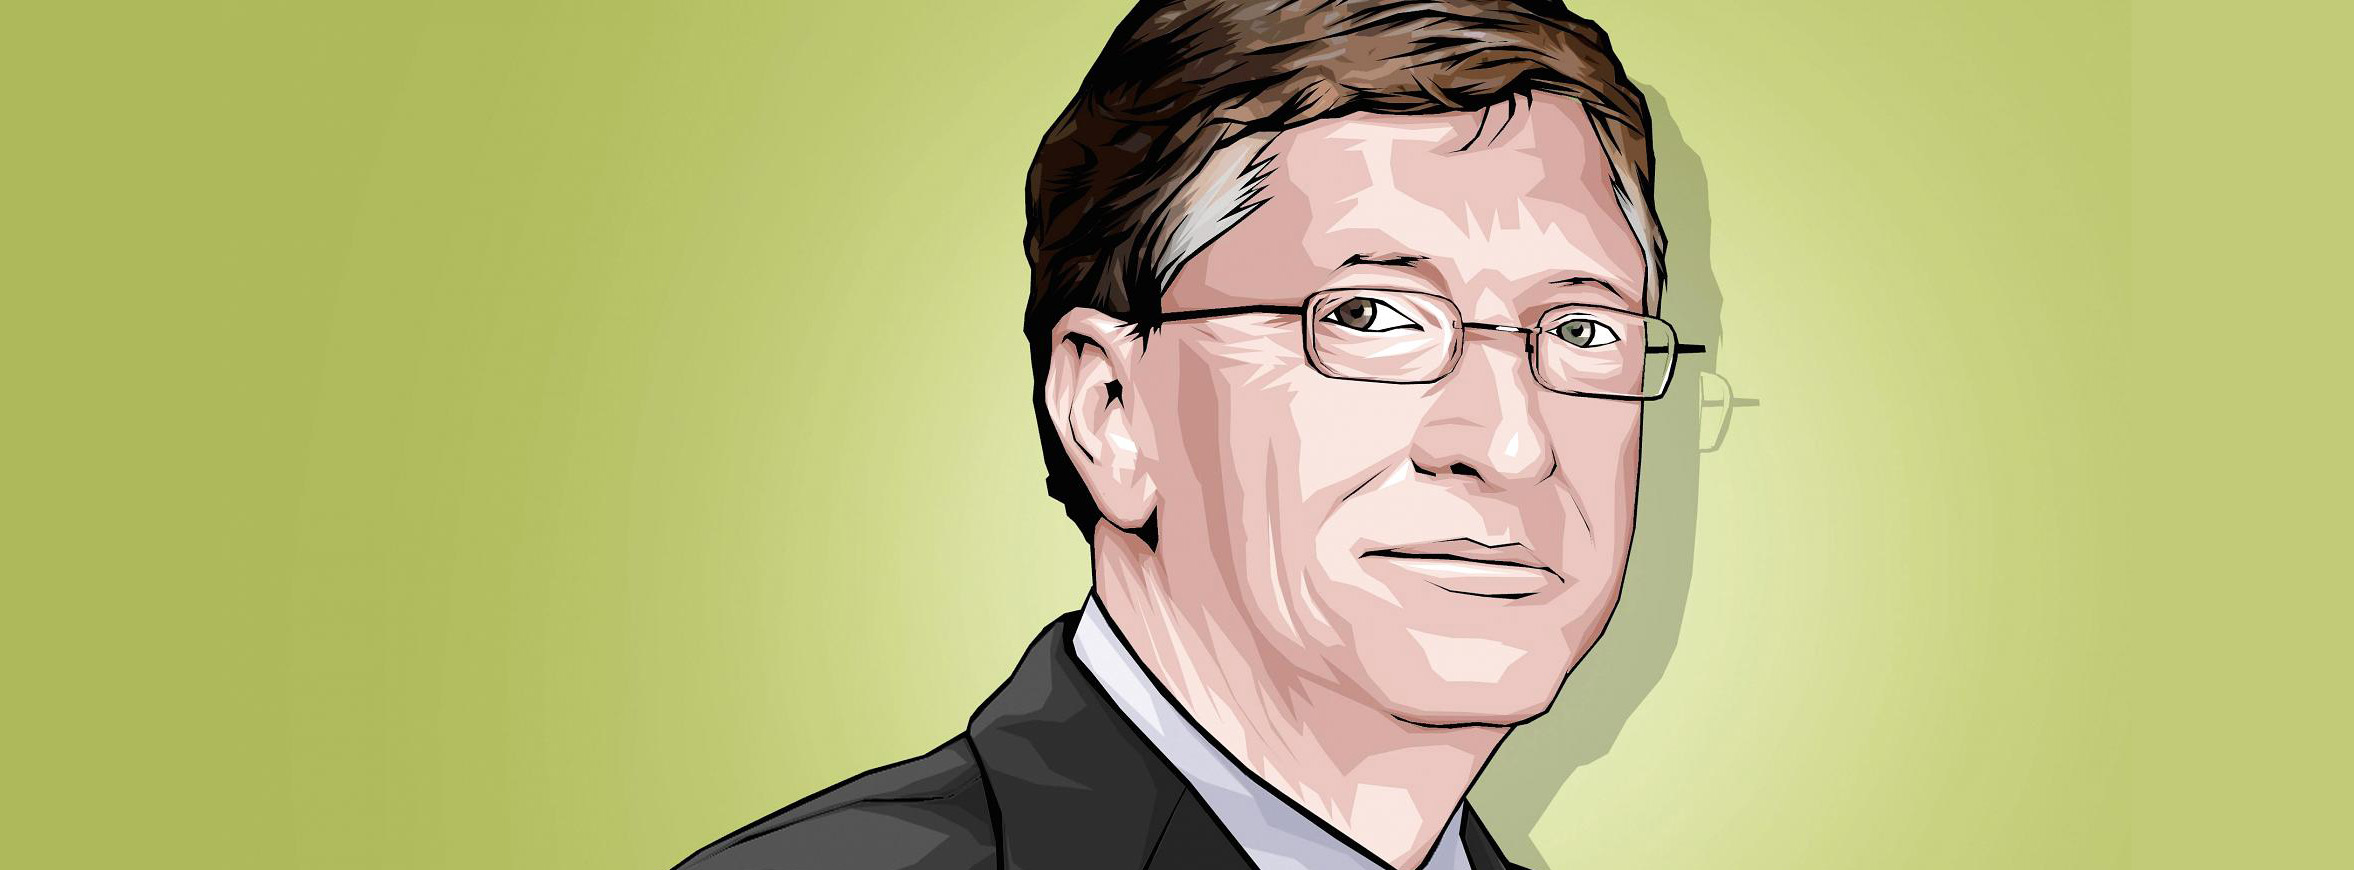 18 năm trước Bill Gates dự đoán gì về thế giới công nghệ và những gì đã xảy ra hiện tại?